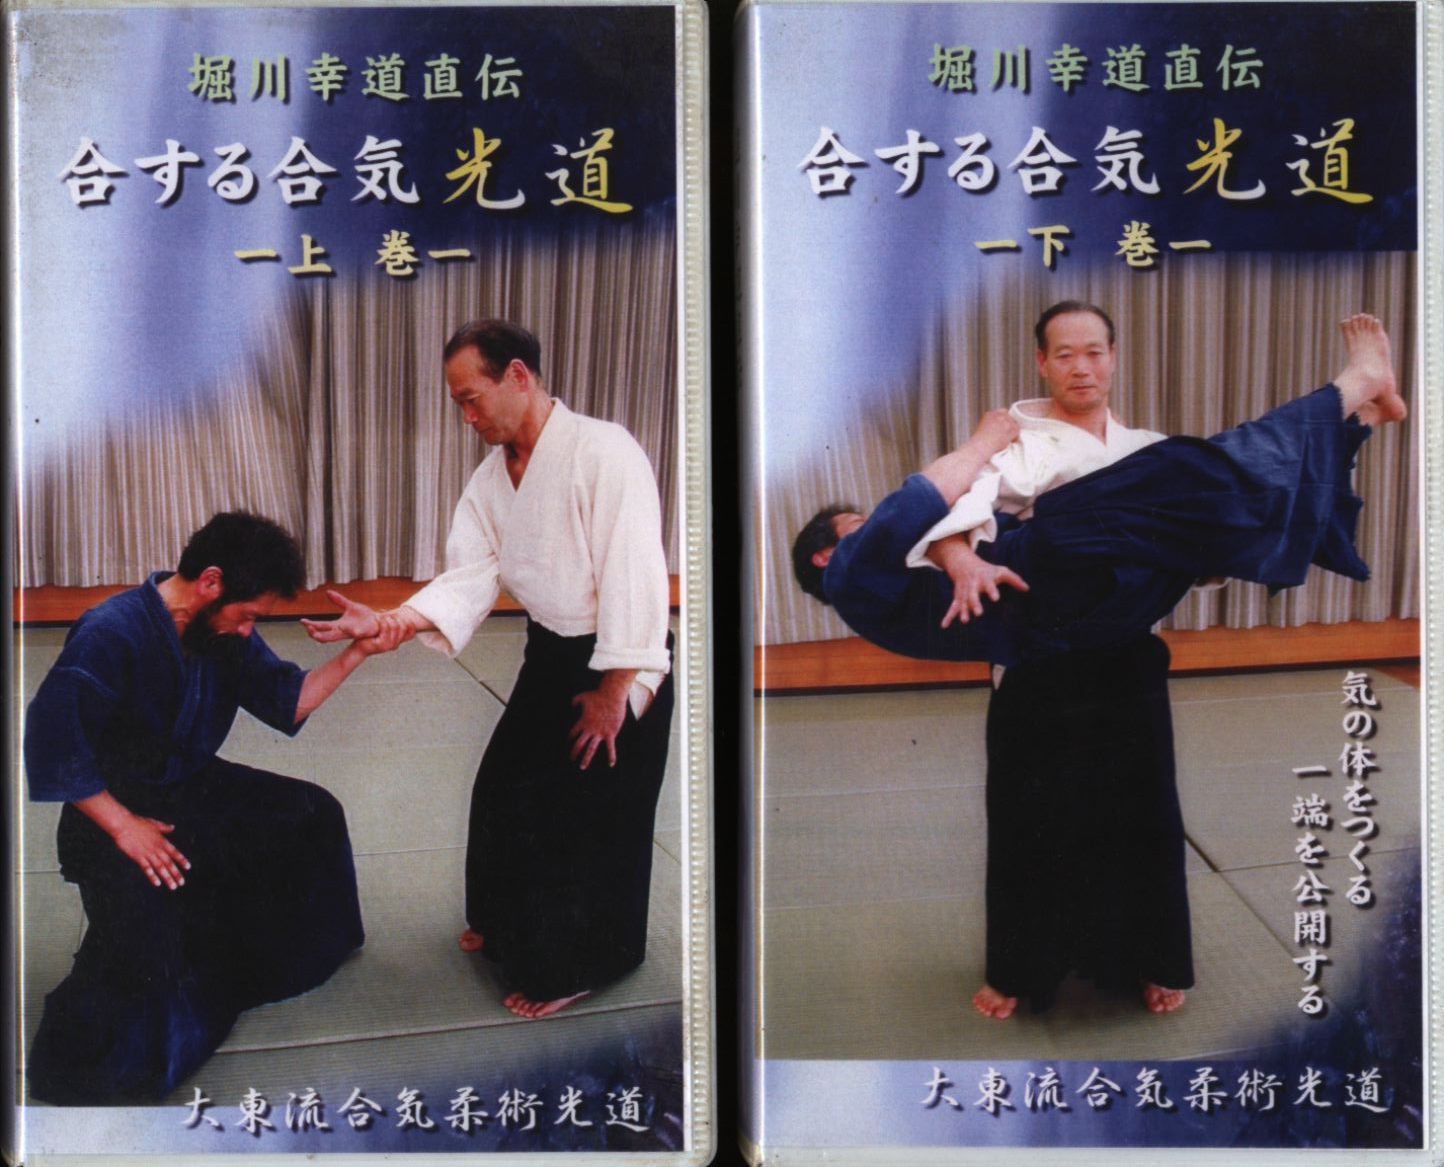 Ai Suru Aiki: Daito Ryu Aikijujutsu Hikari Do 2 VHS Set by Takeo Nishikido (Preowned)